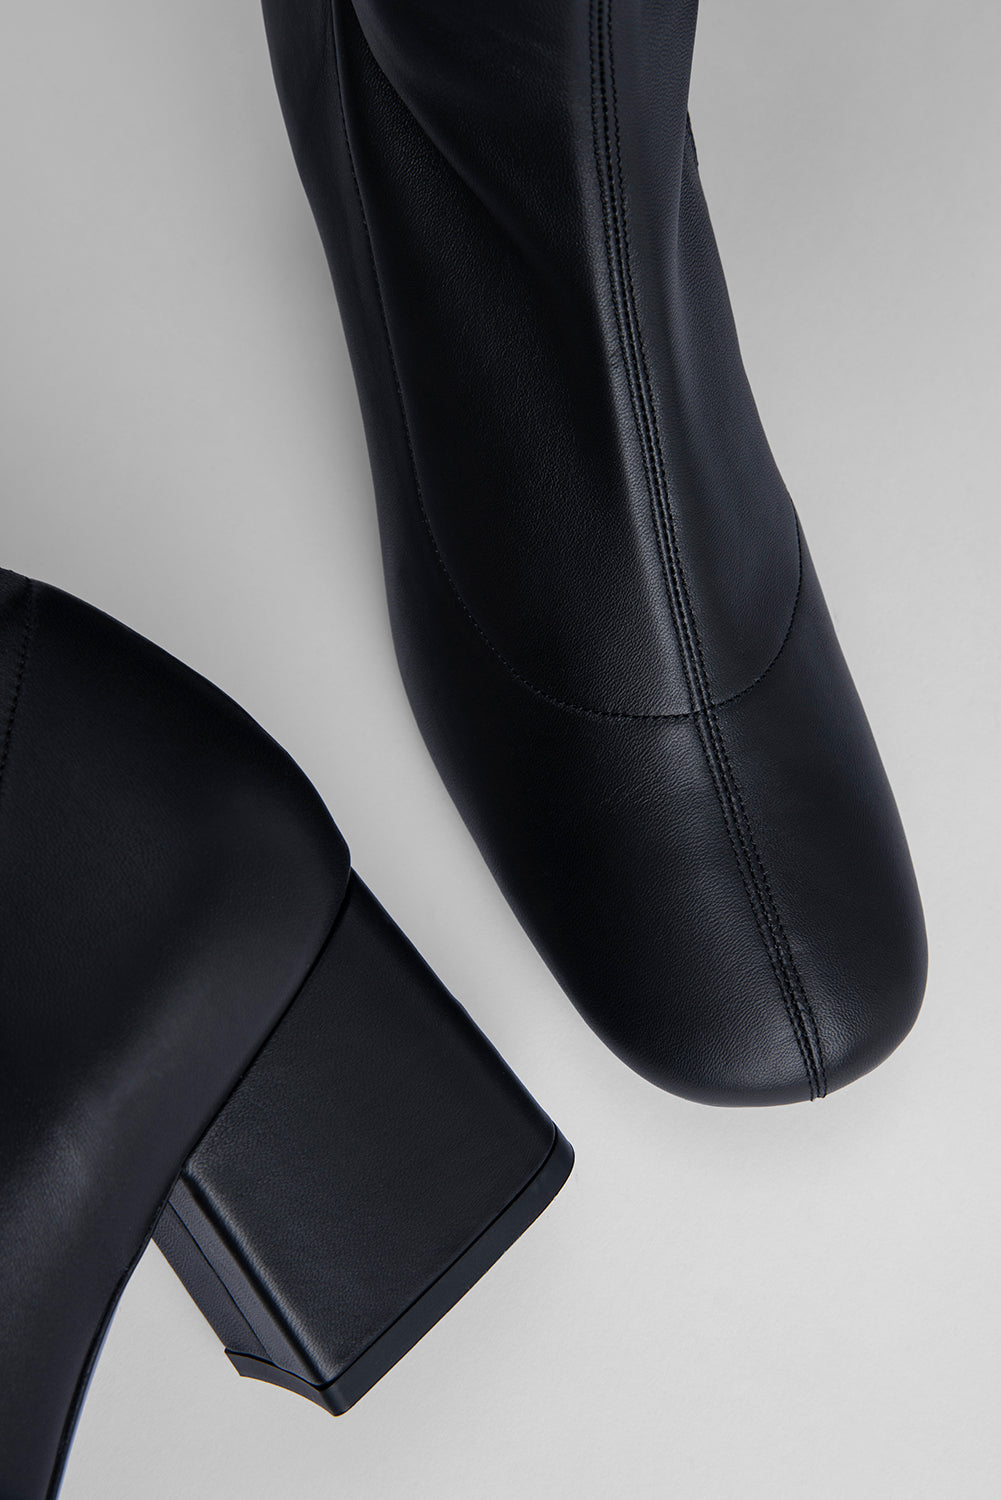 Carlos 42 Black Stretch Leather – BY FAR